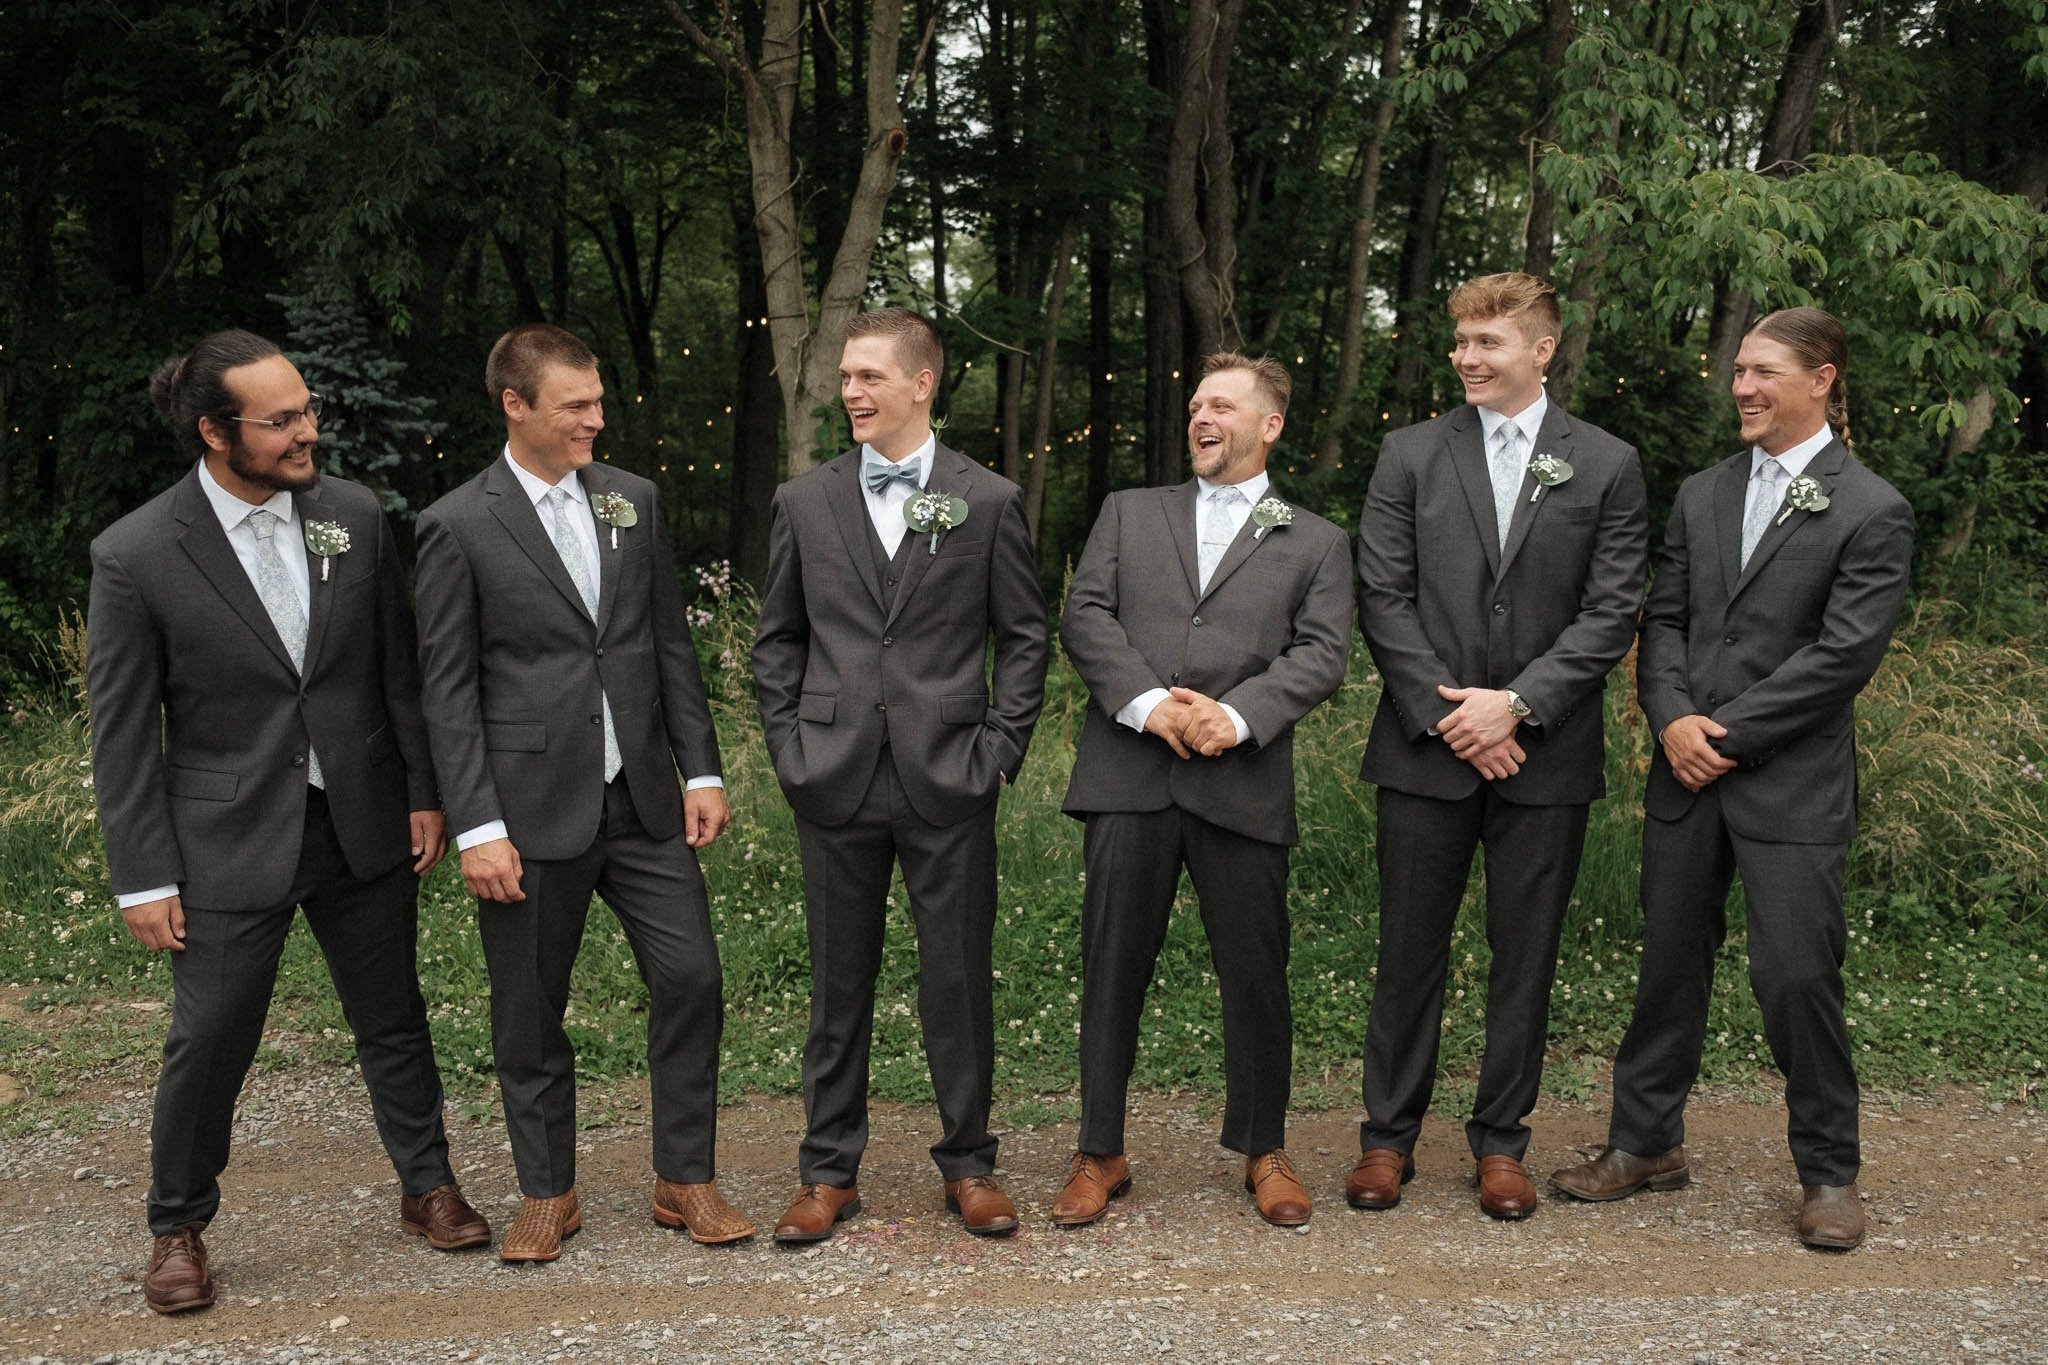  pittsburgh wedding photographers groomsmen 